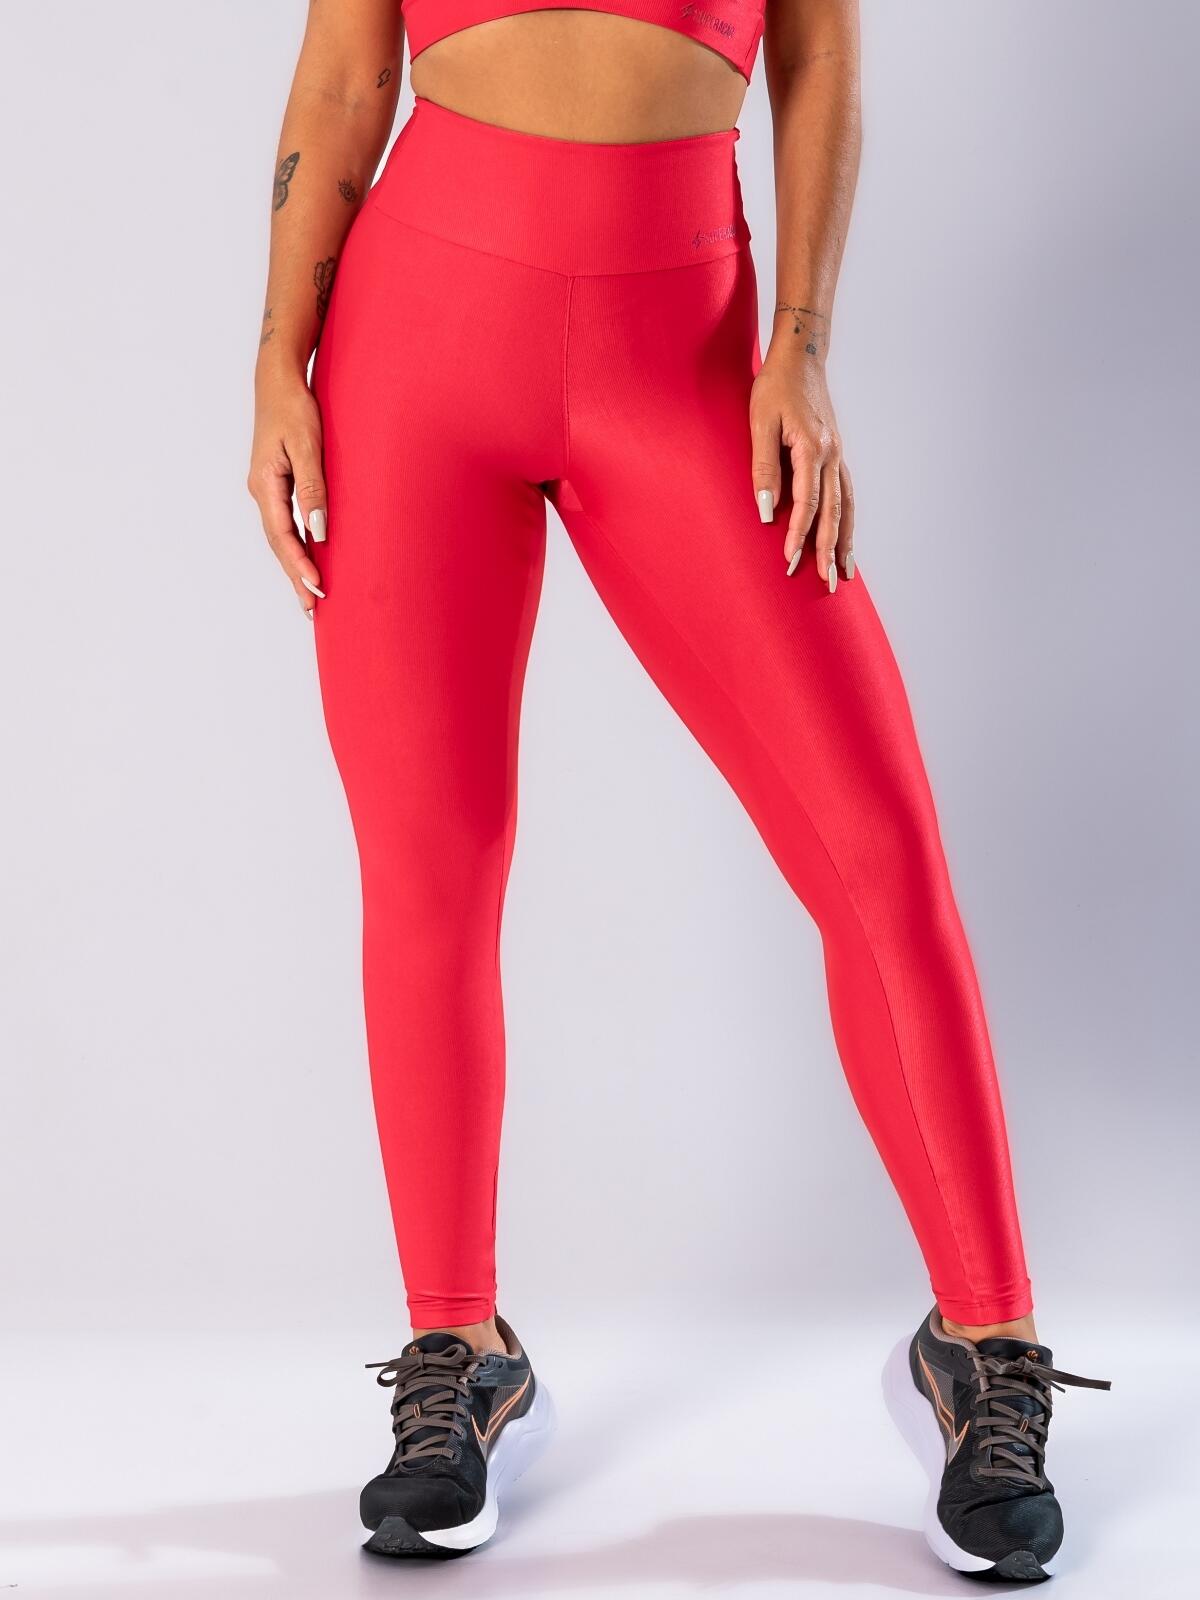 Comprar Legging Fitness Recorte Entrepernas Chic Red - a partir de R$139,46  - Super Ação